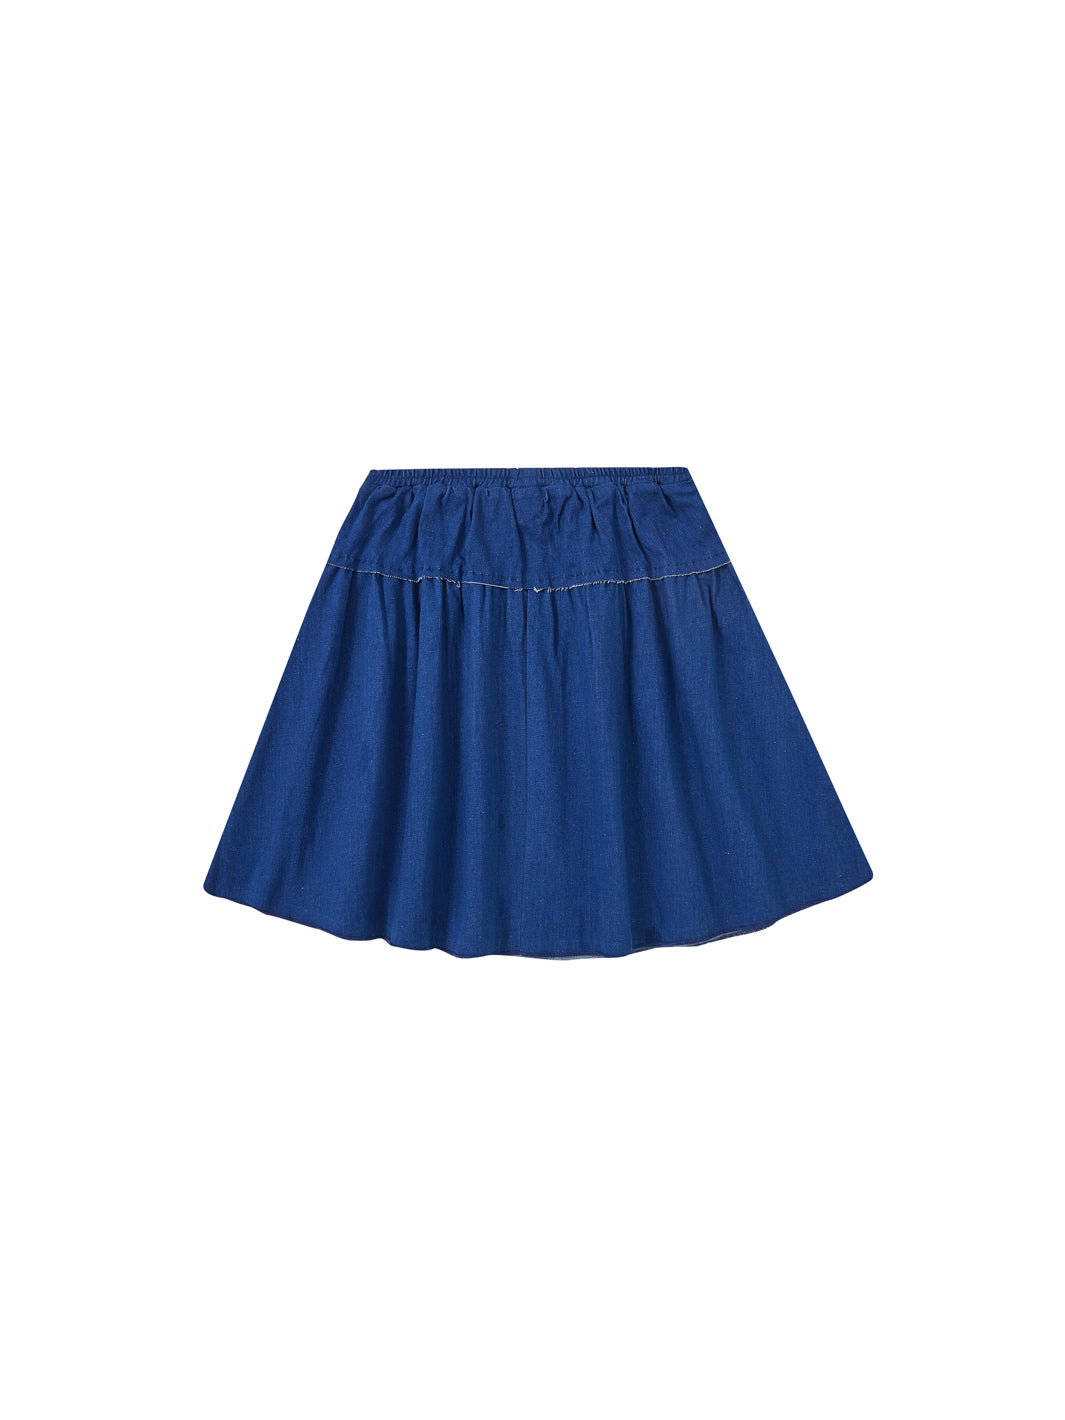 Denim Elastic Yoke Skirt - Blue Denim